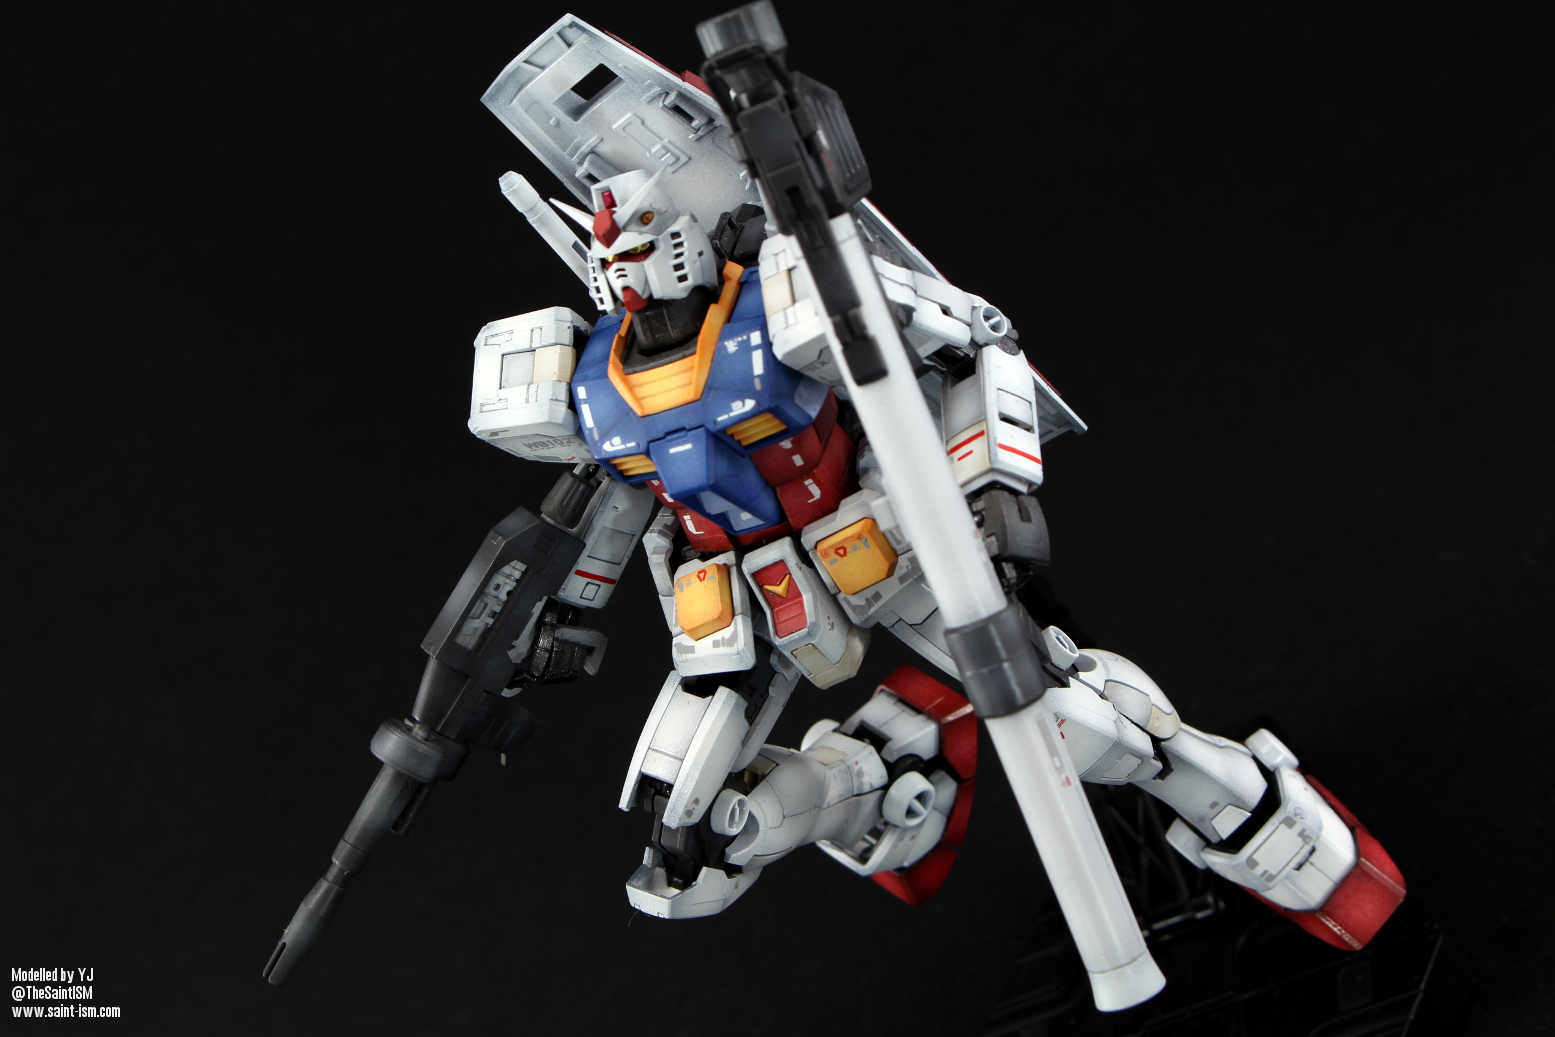 Everything Gundam - Gunpla Posing Tutorial - Wattpad